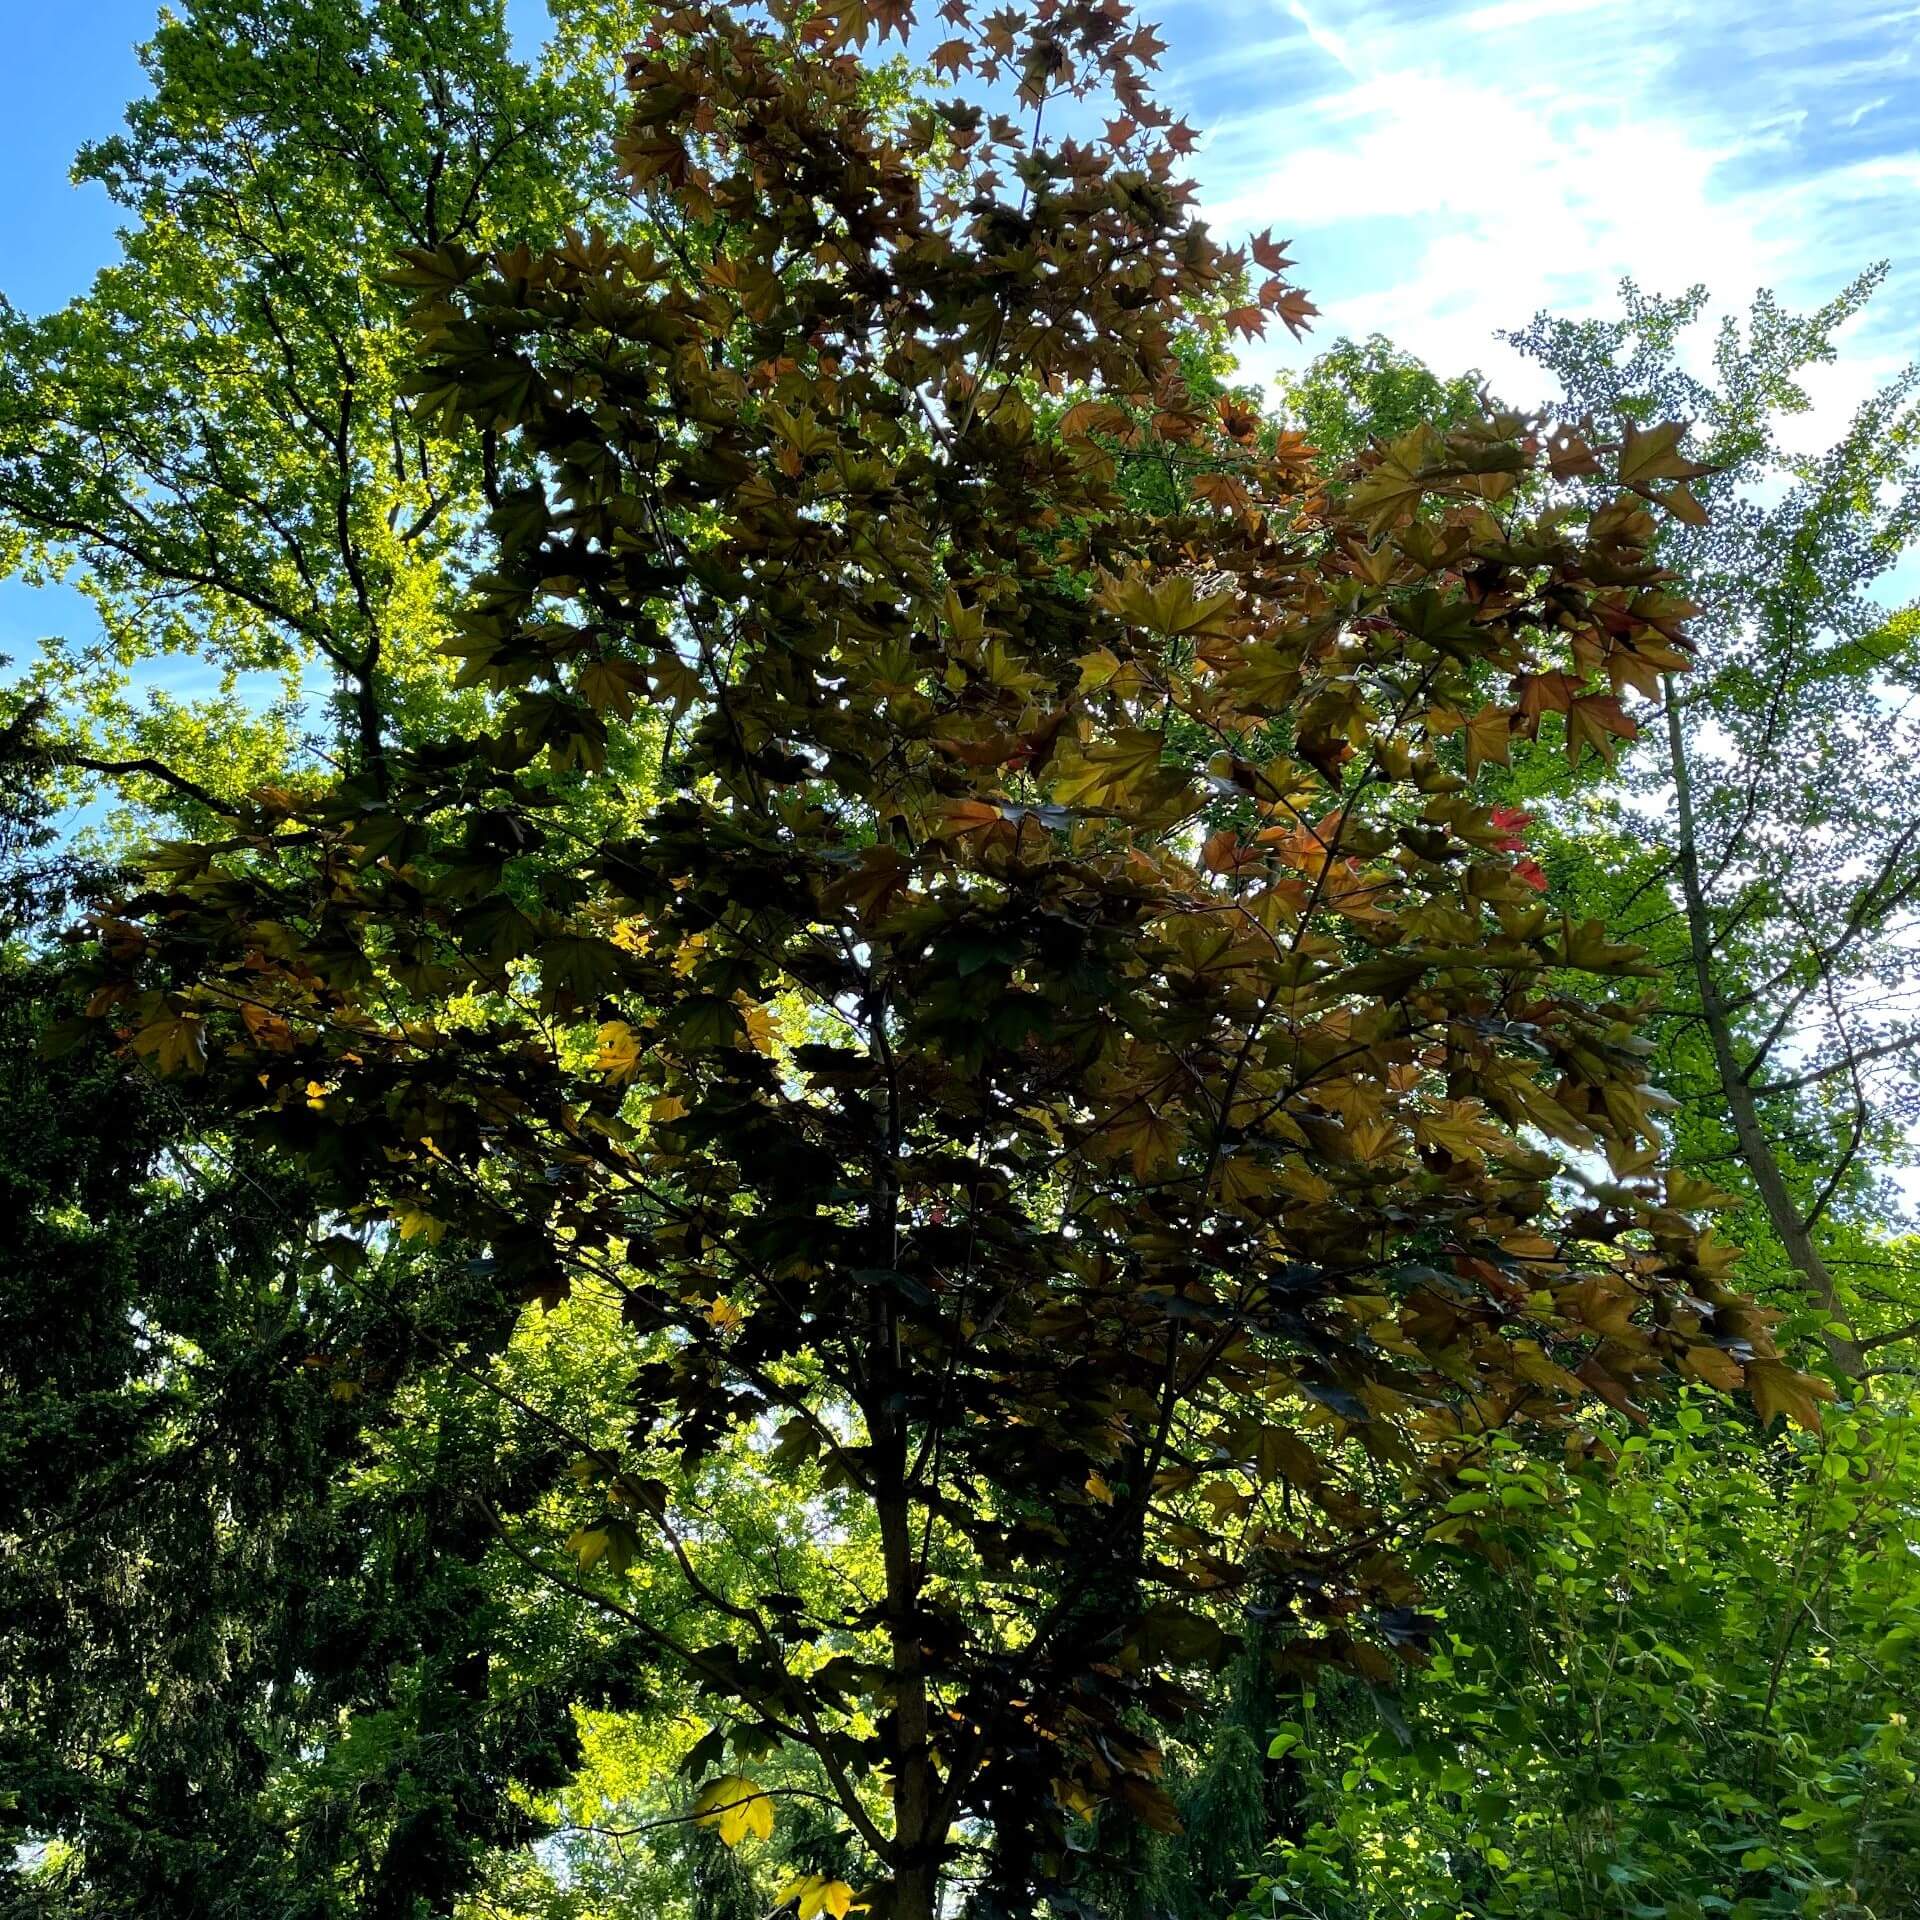 Oregon-Blutahorn 'Royal Red' (Acer platanoides 'Royal Red')